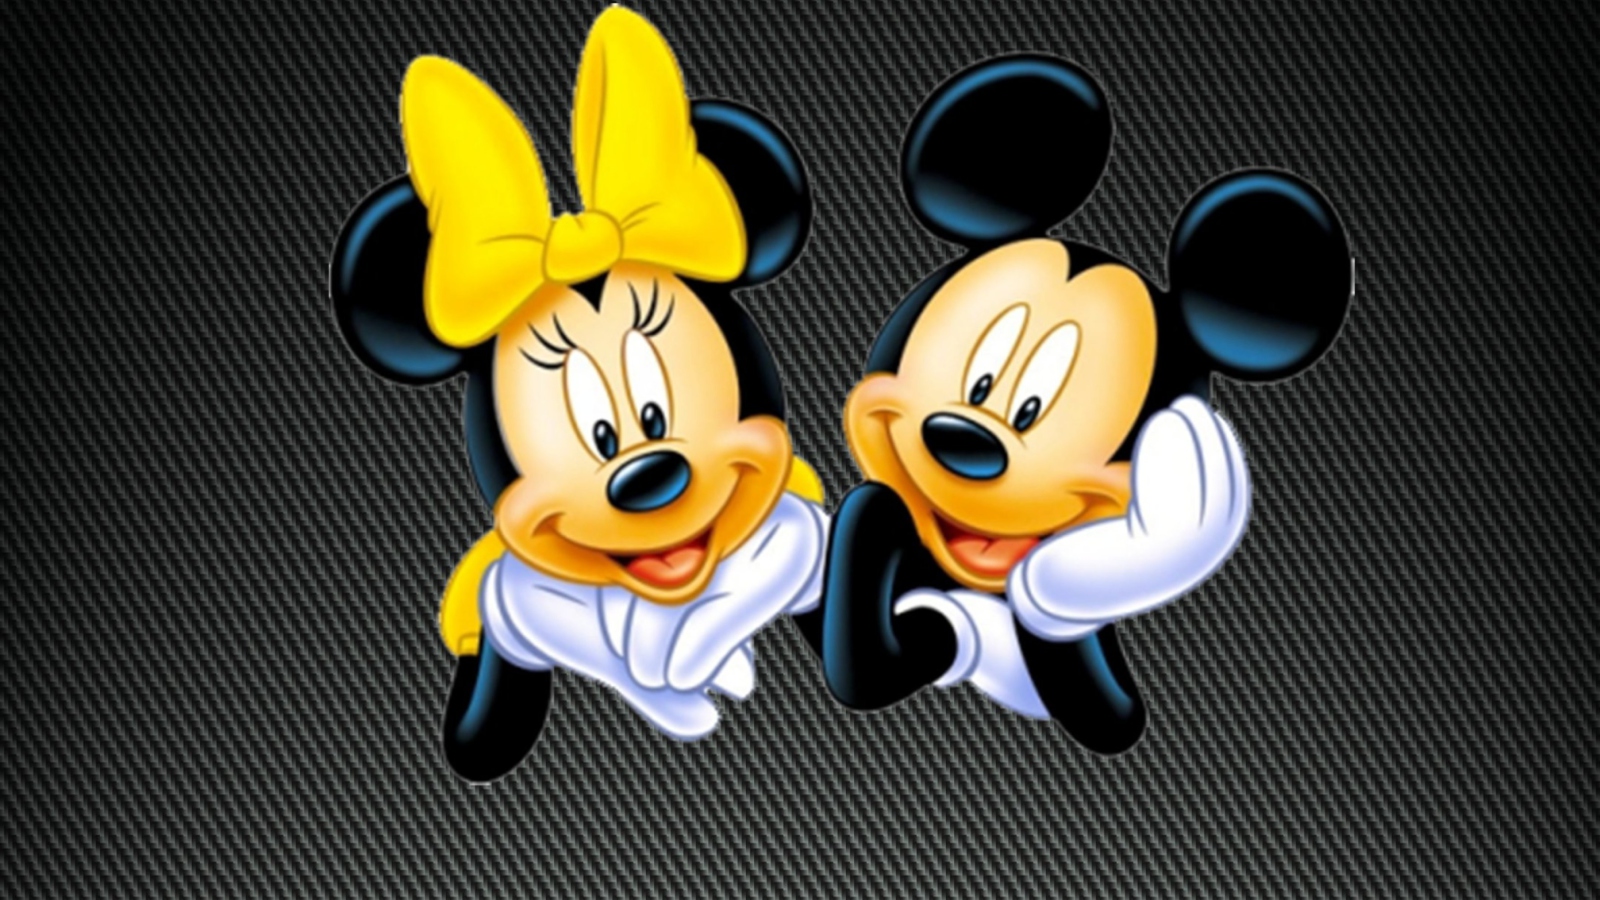 Mickey And Minnie wallpaper 1600x900